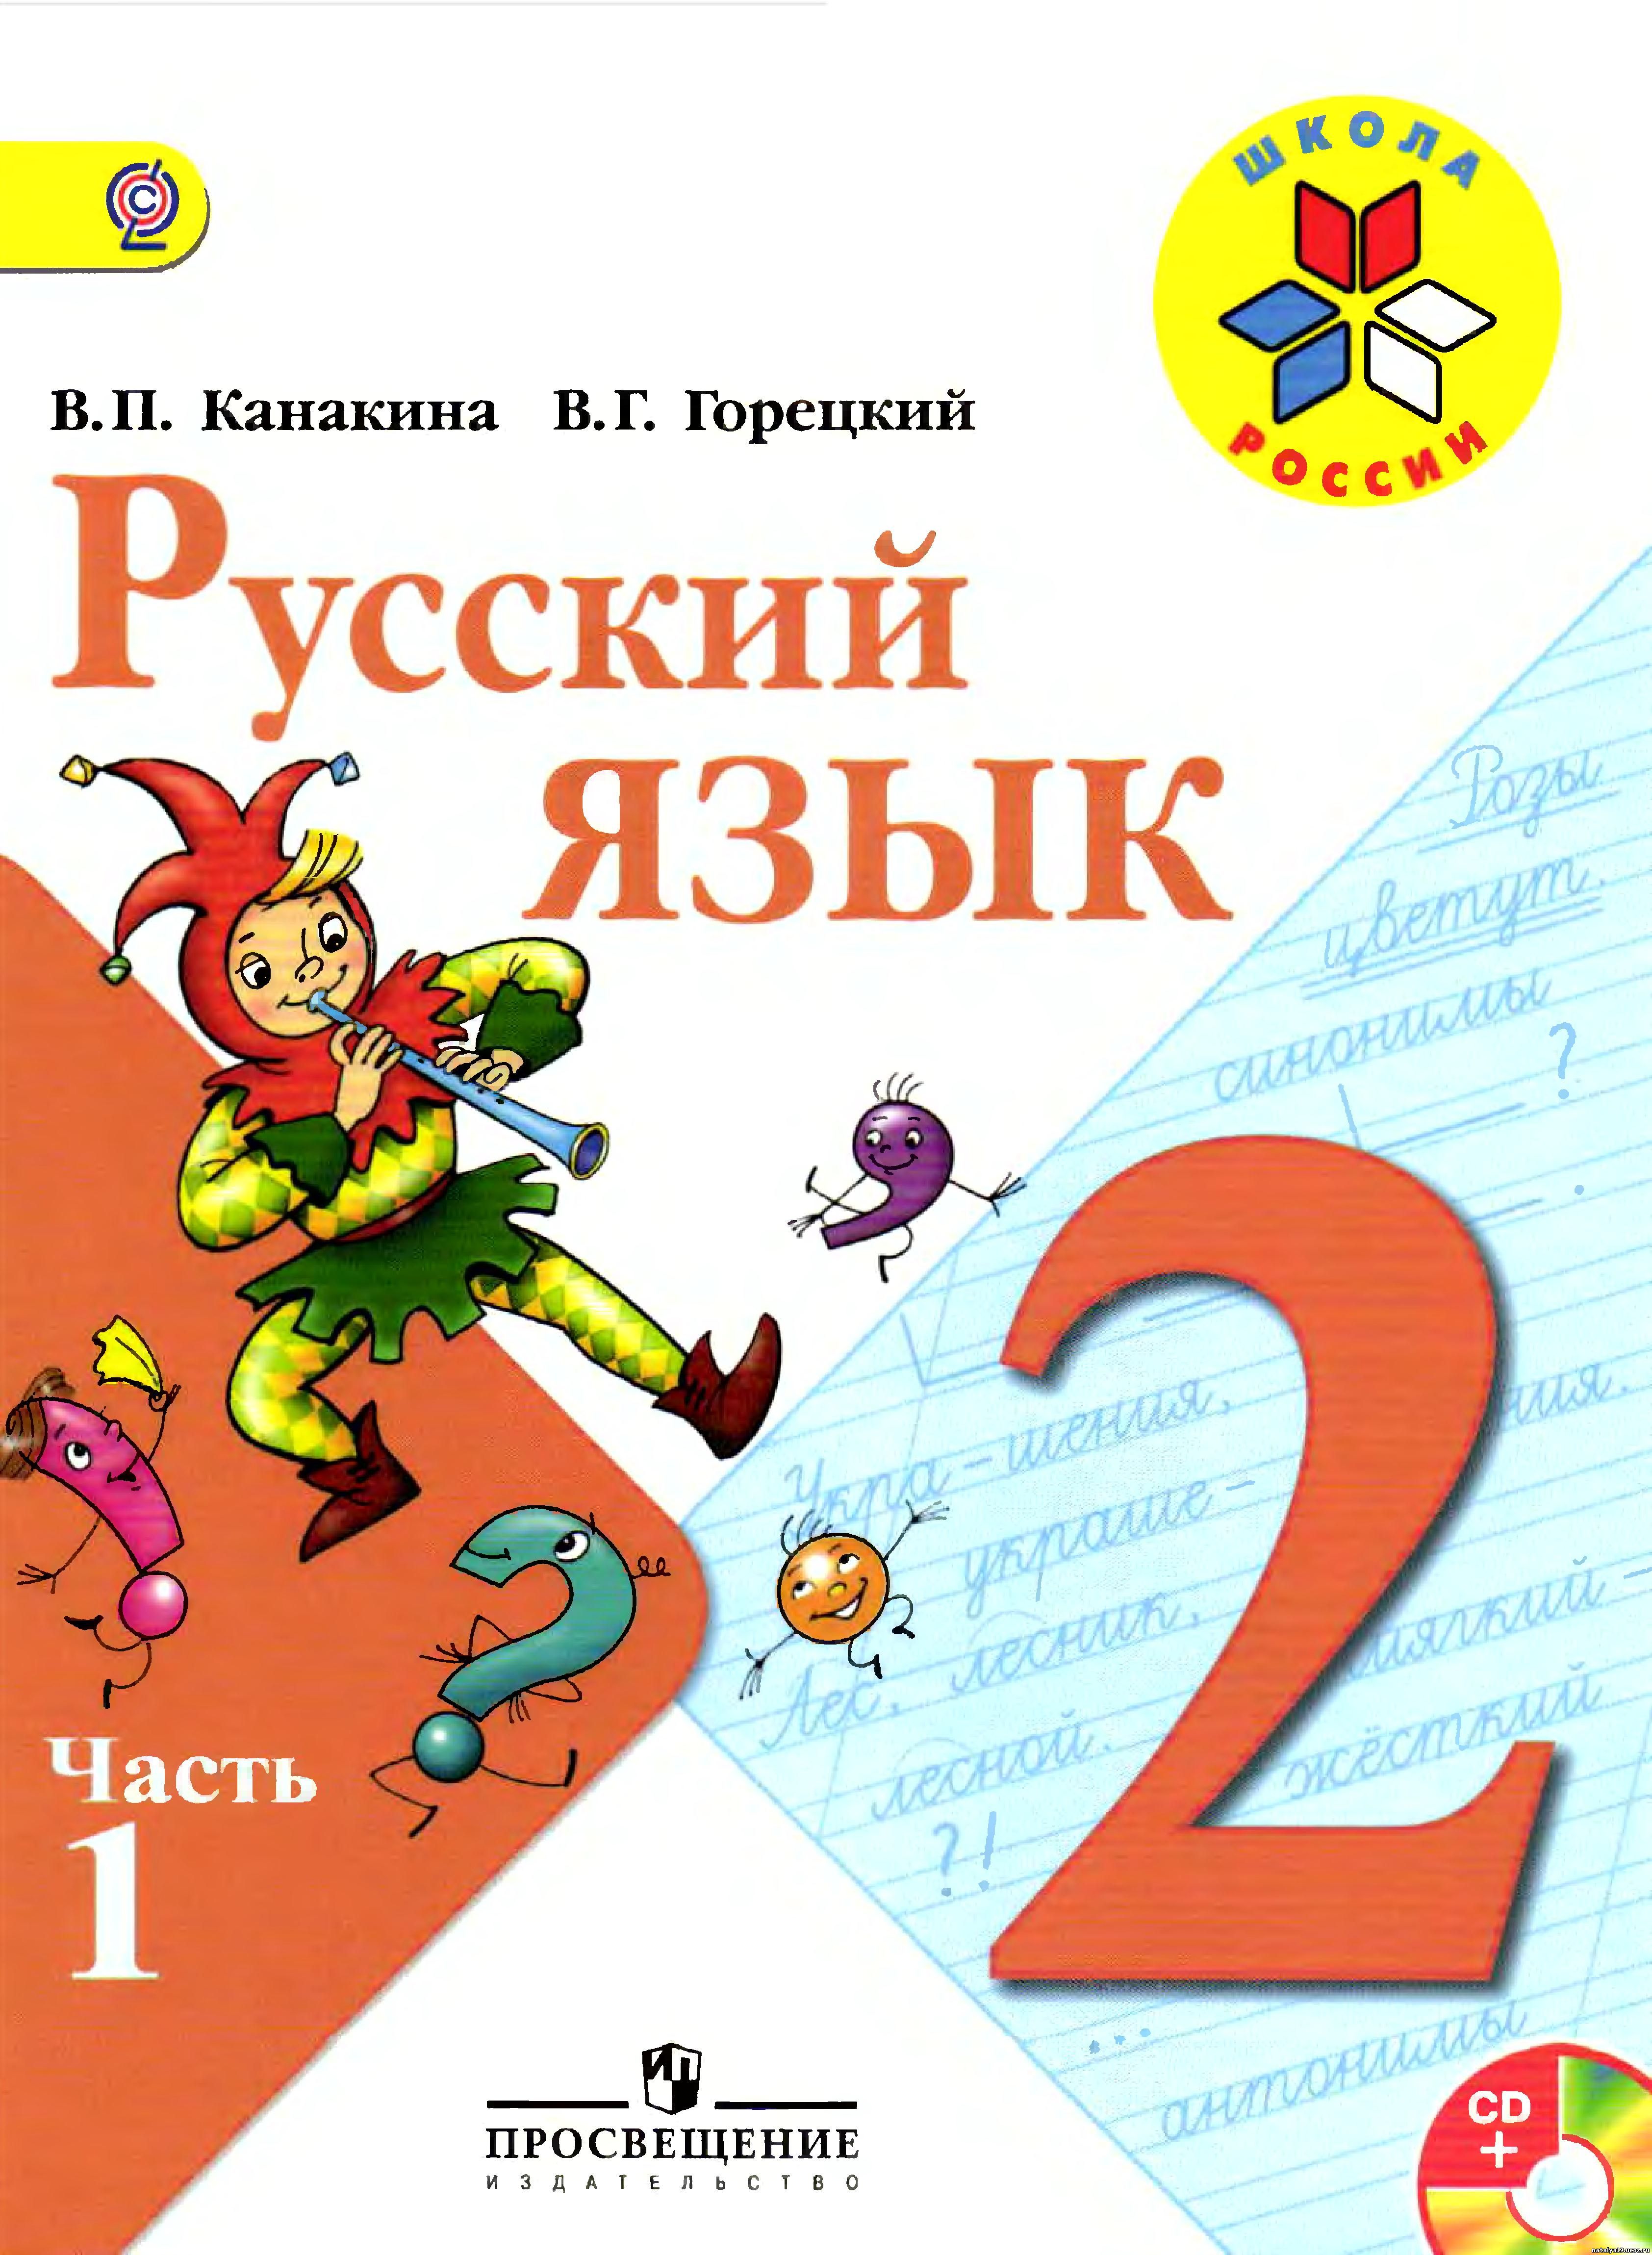 2класс школа россии поурочные разработки по математике скачать бесплатно без регистрации